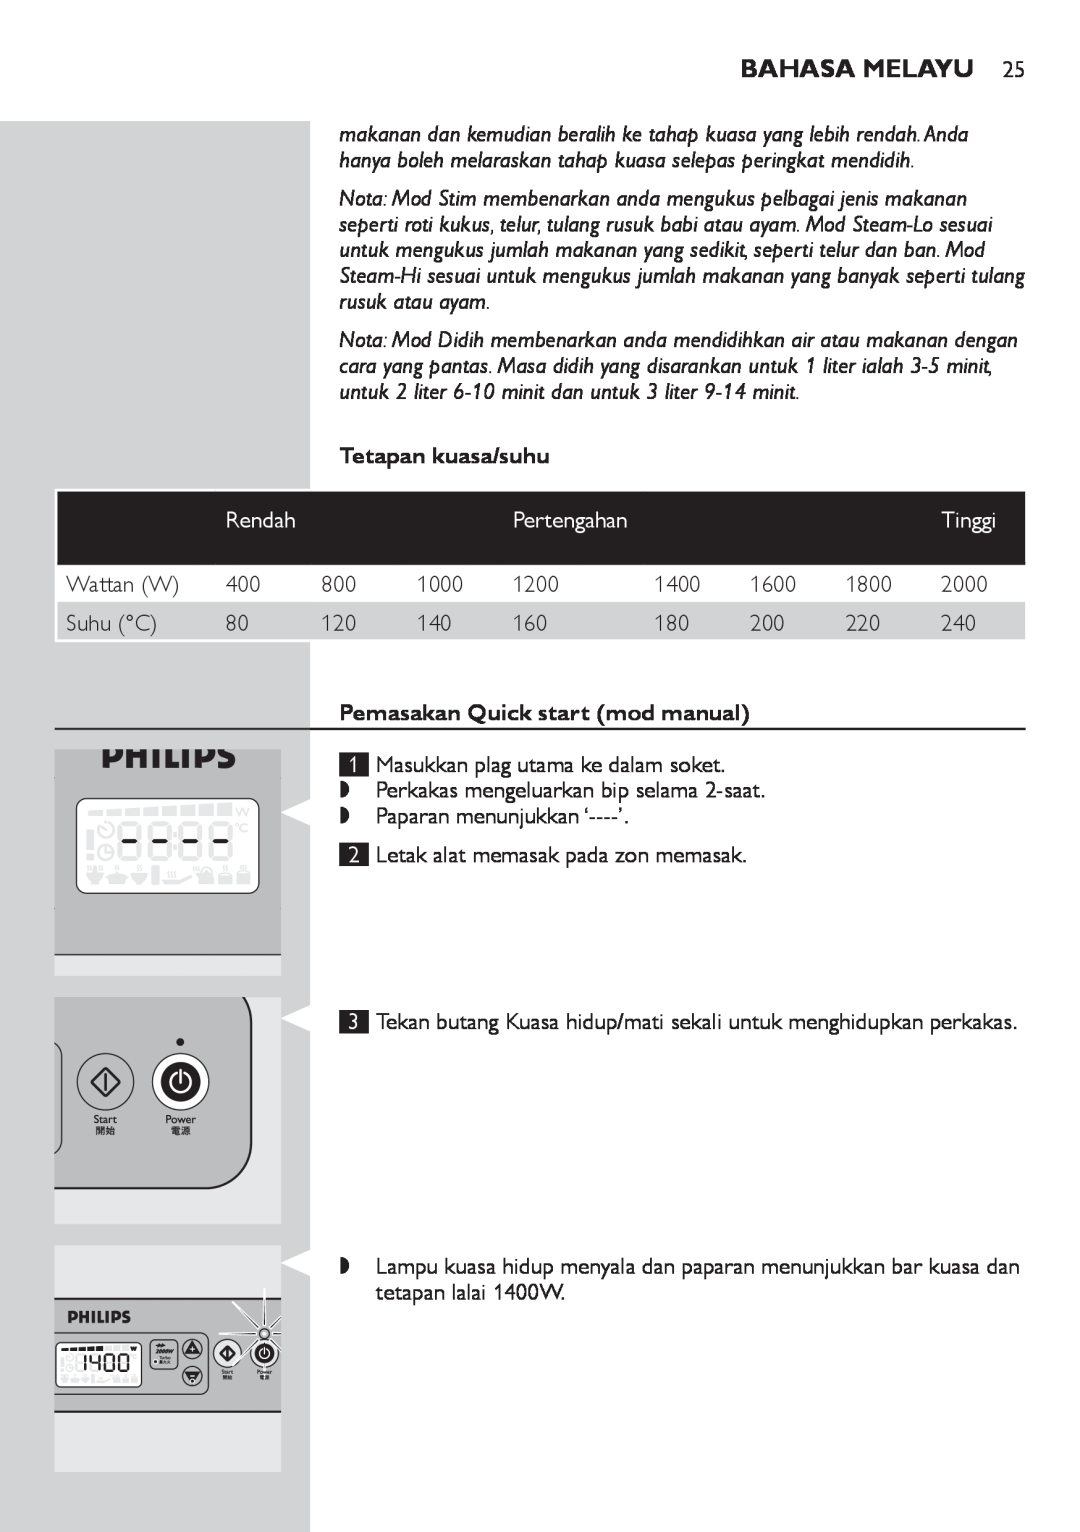 Philips HD4918 Bahasa Melayu, Tetapan kuasa/suhu, Tinggi, Pemasakan Quick start mod manual 